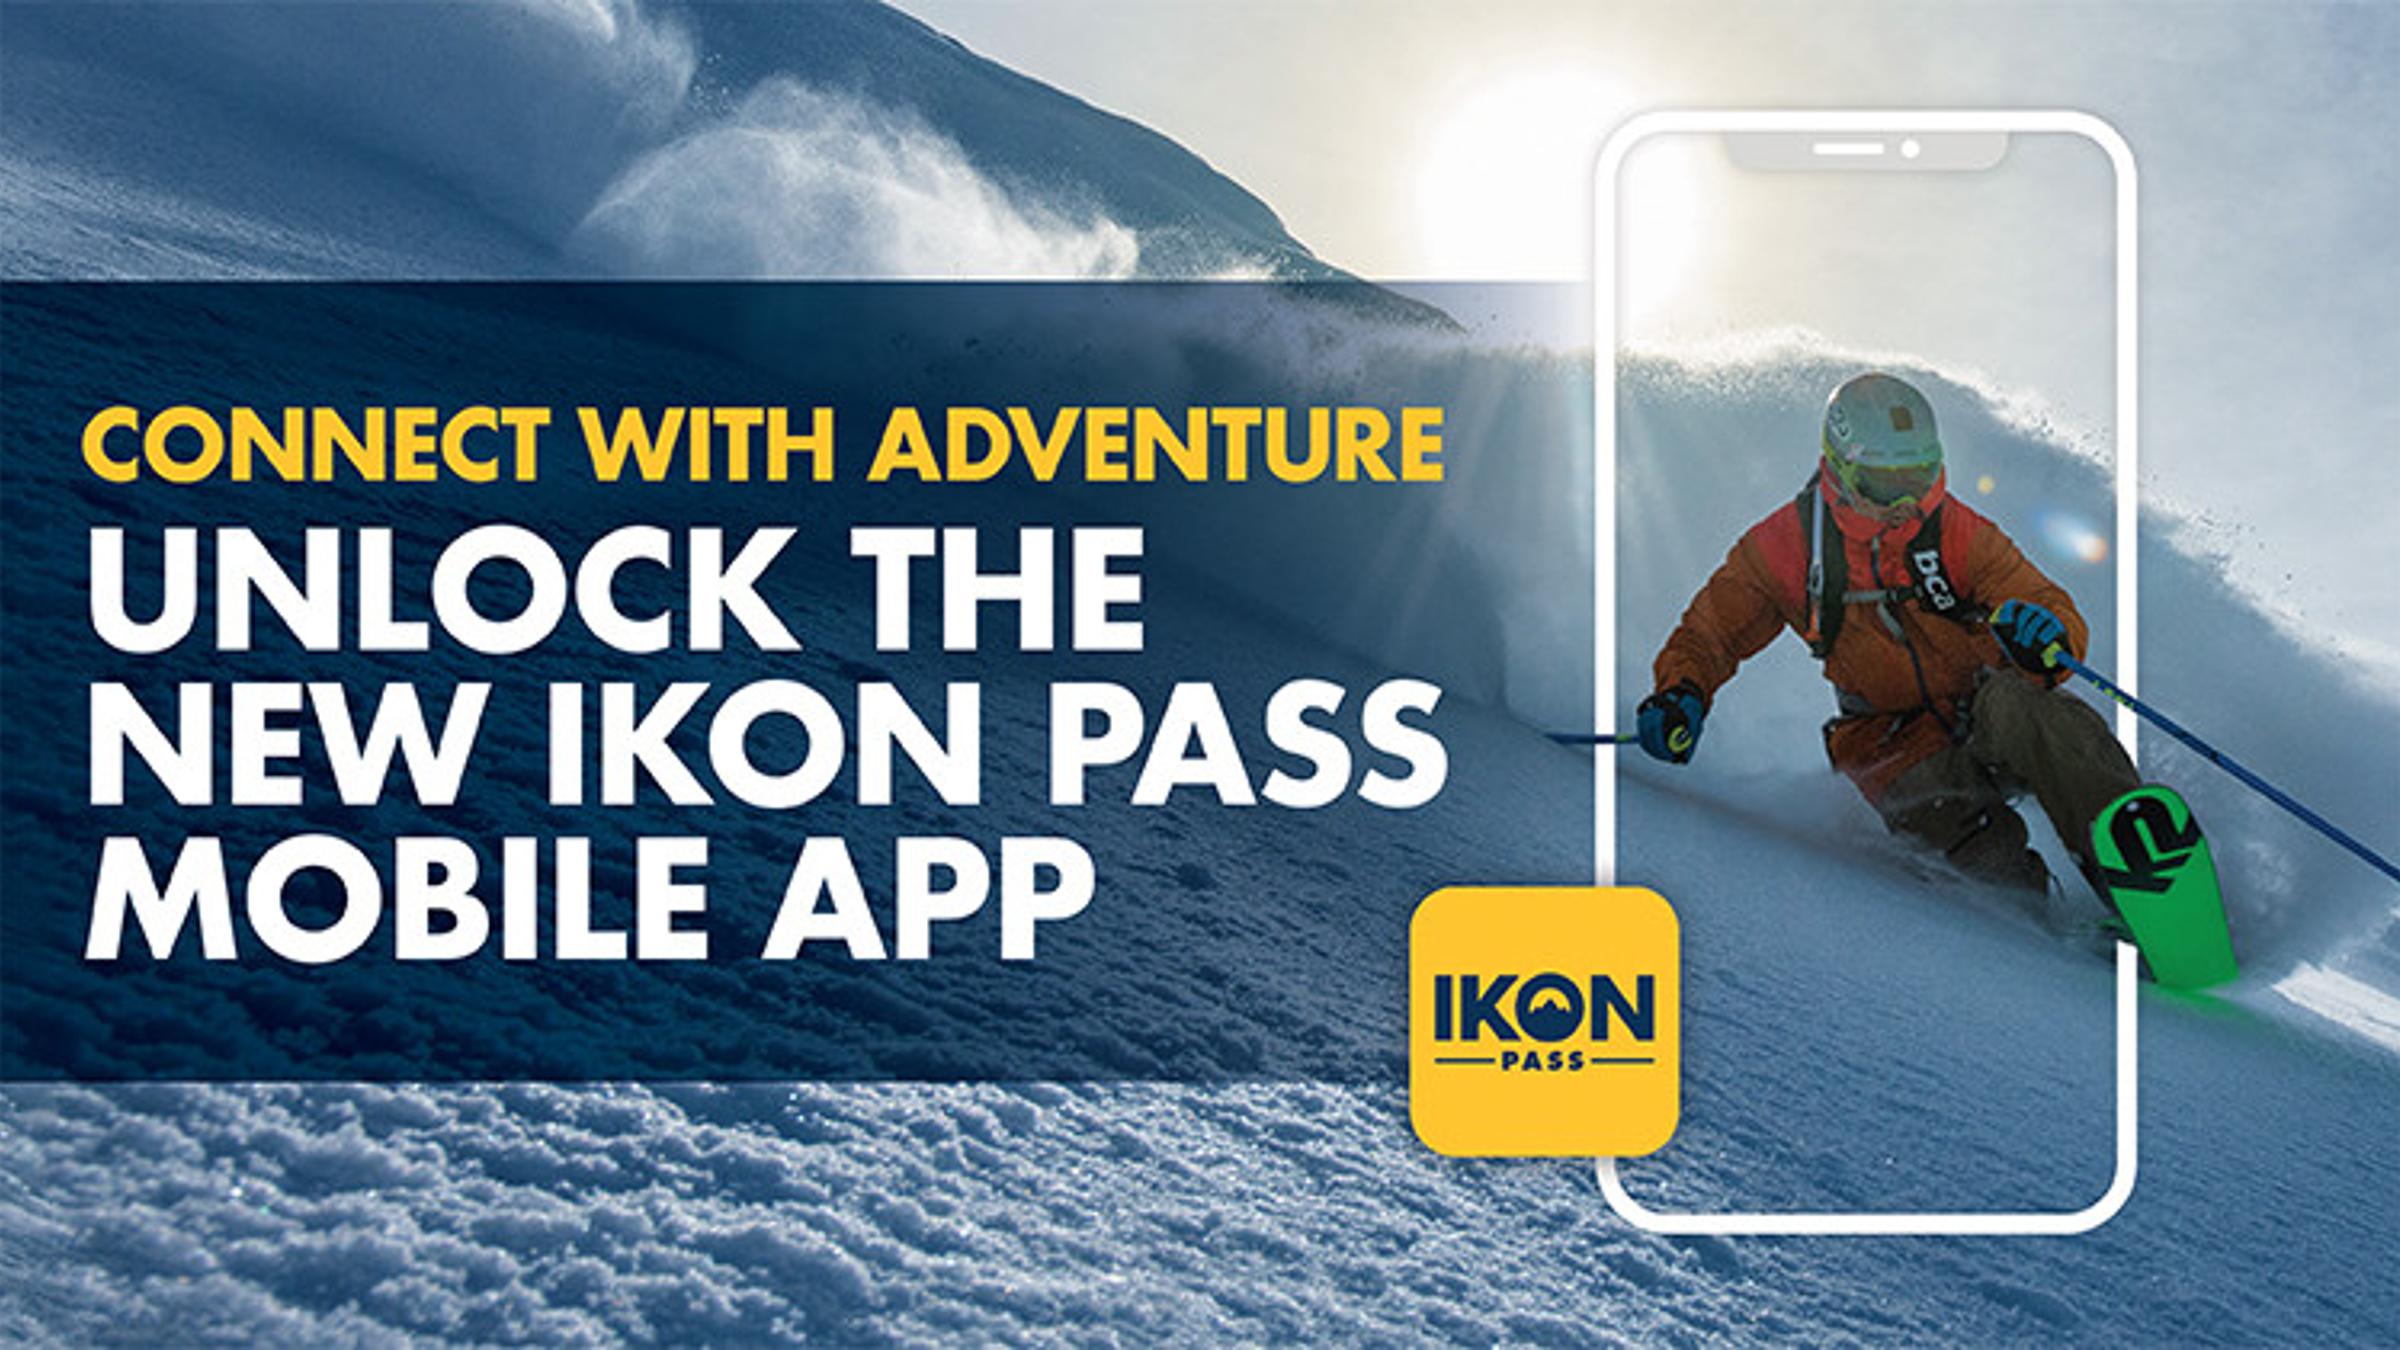 Ikon Pass Mobile App